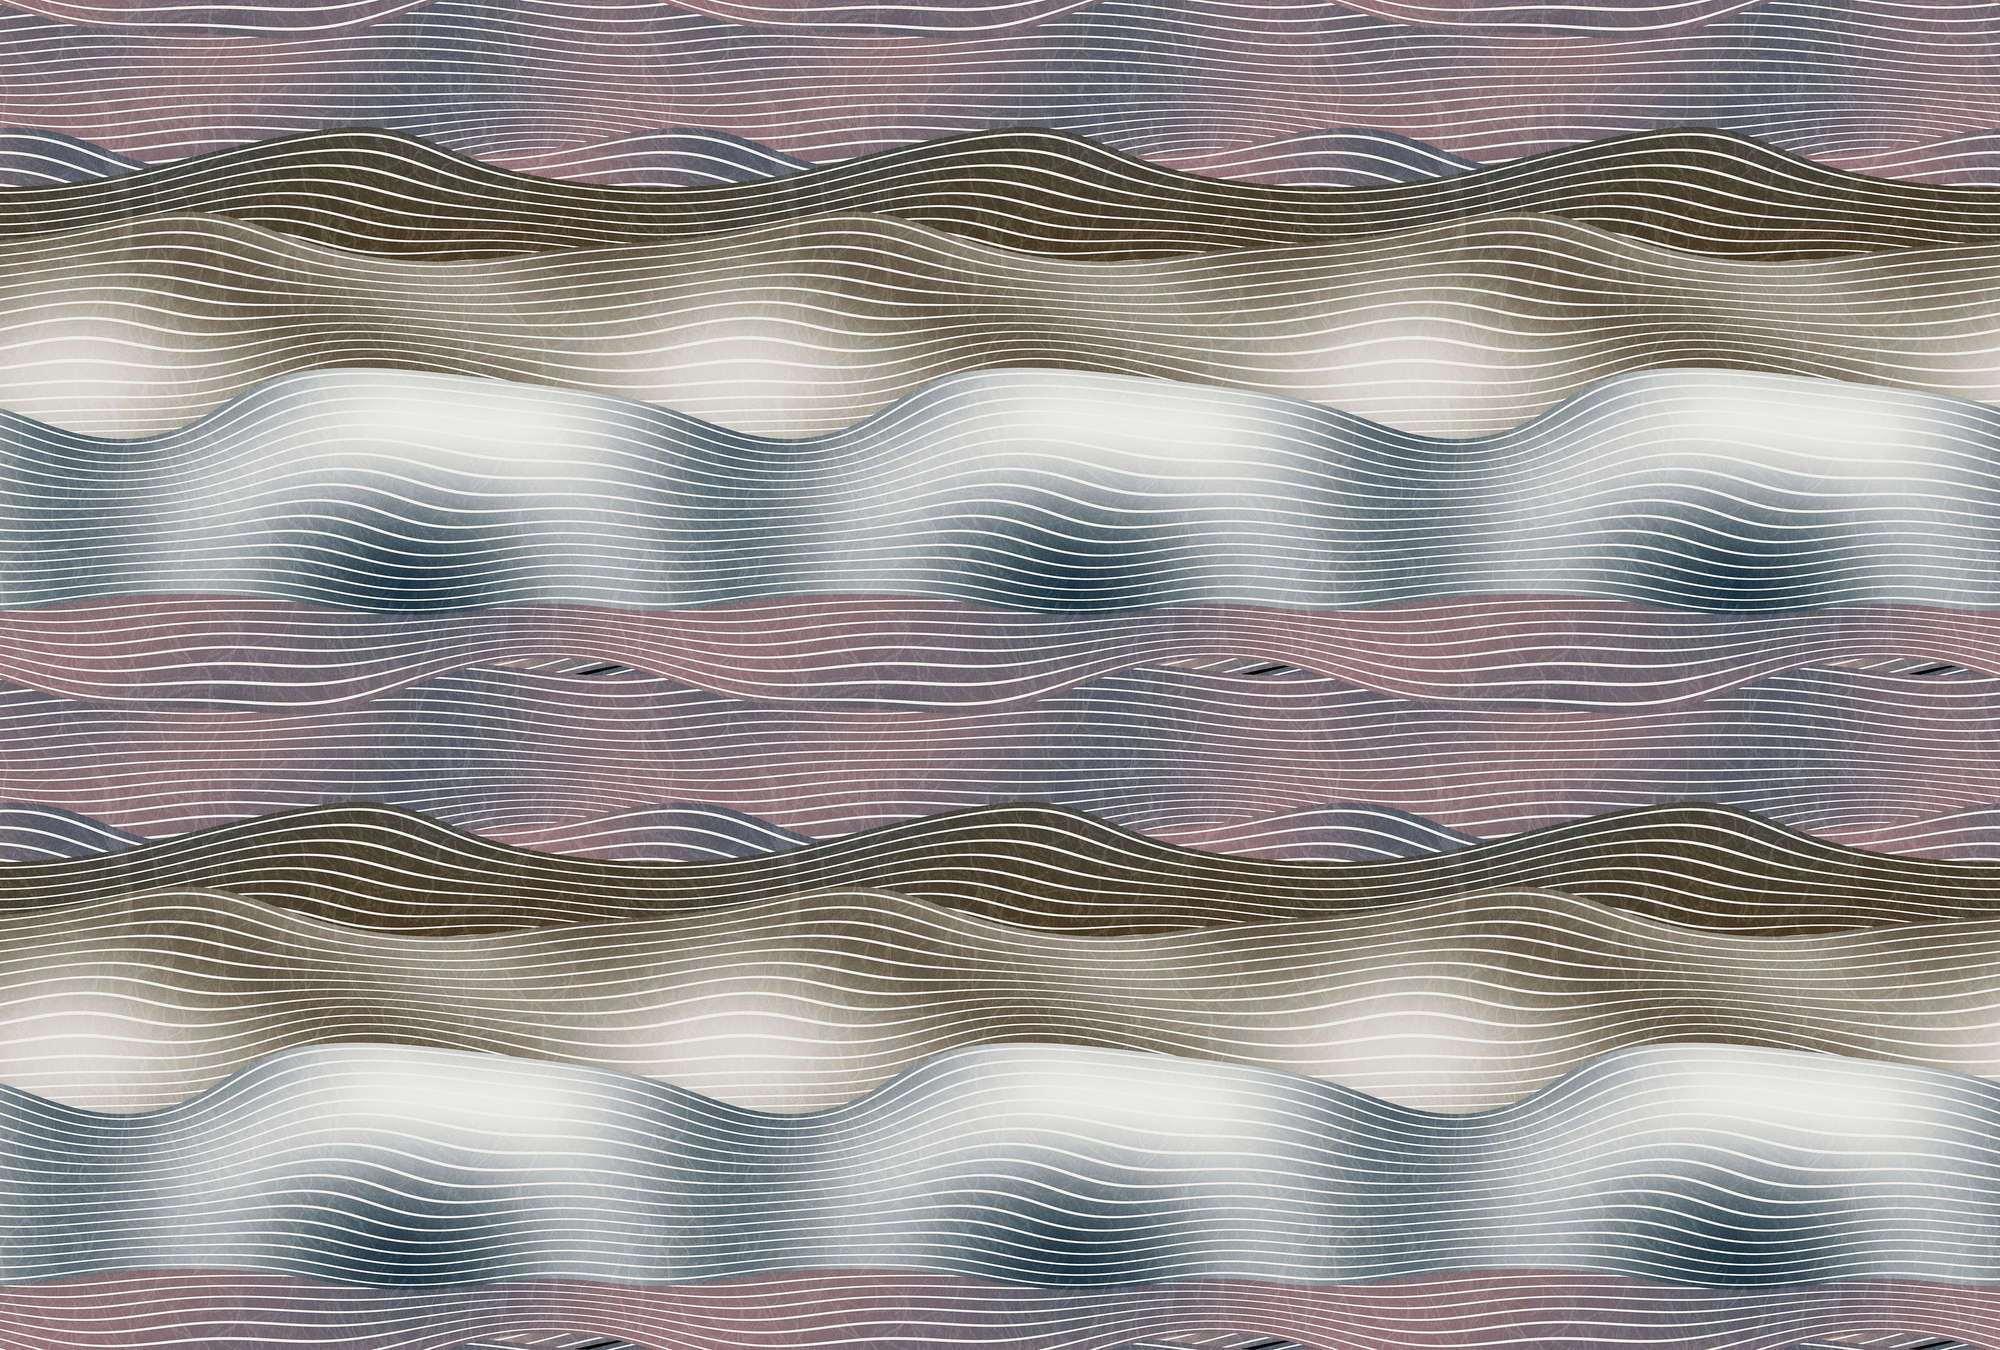             Space 2 - Papier peint rétro Space Design motif vagues
        